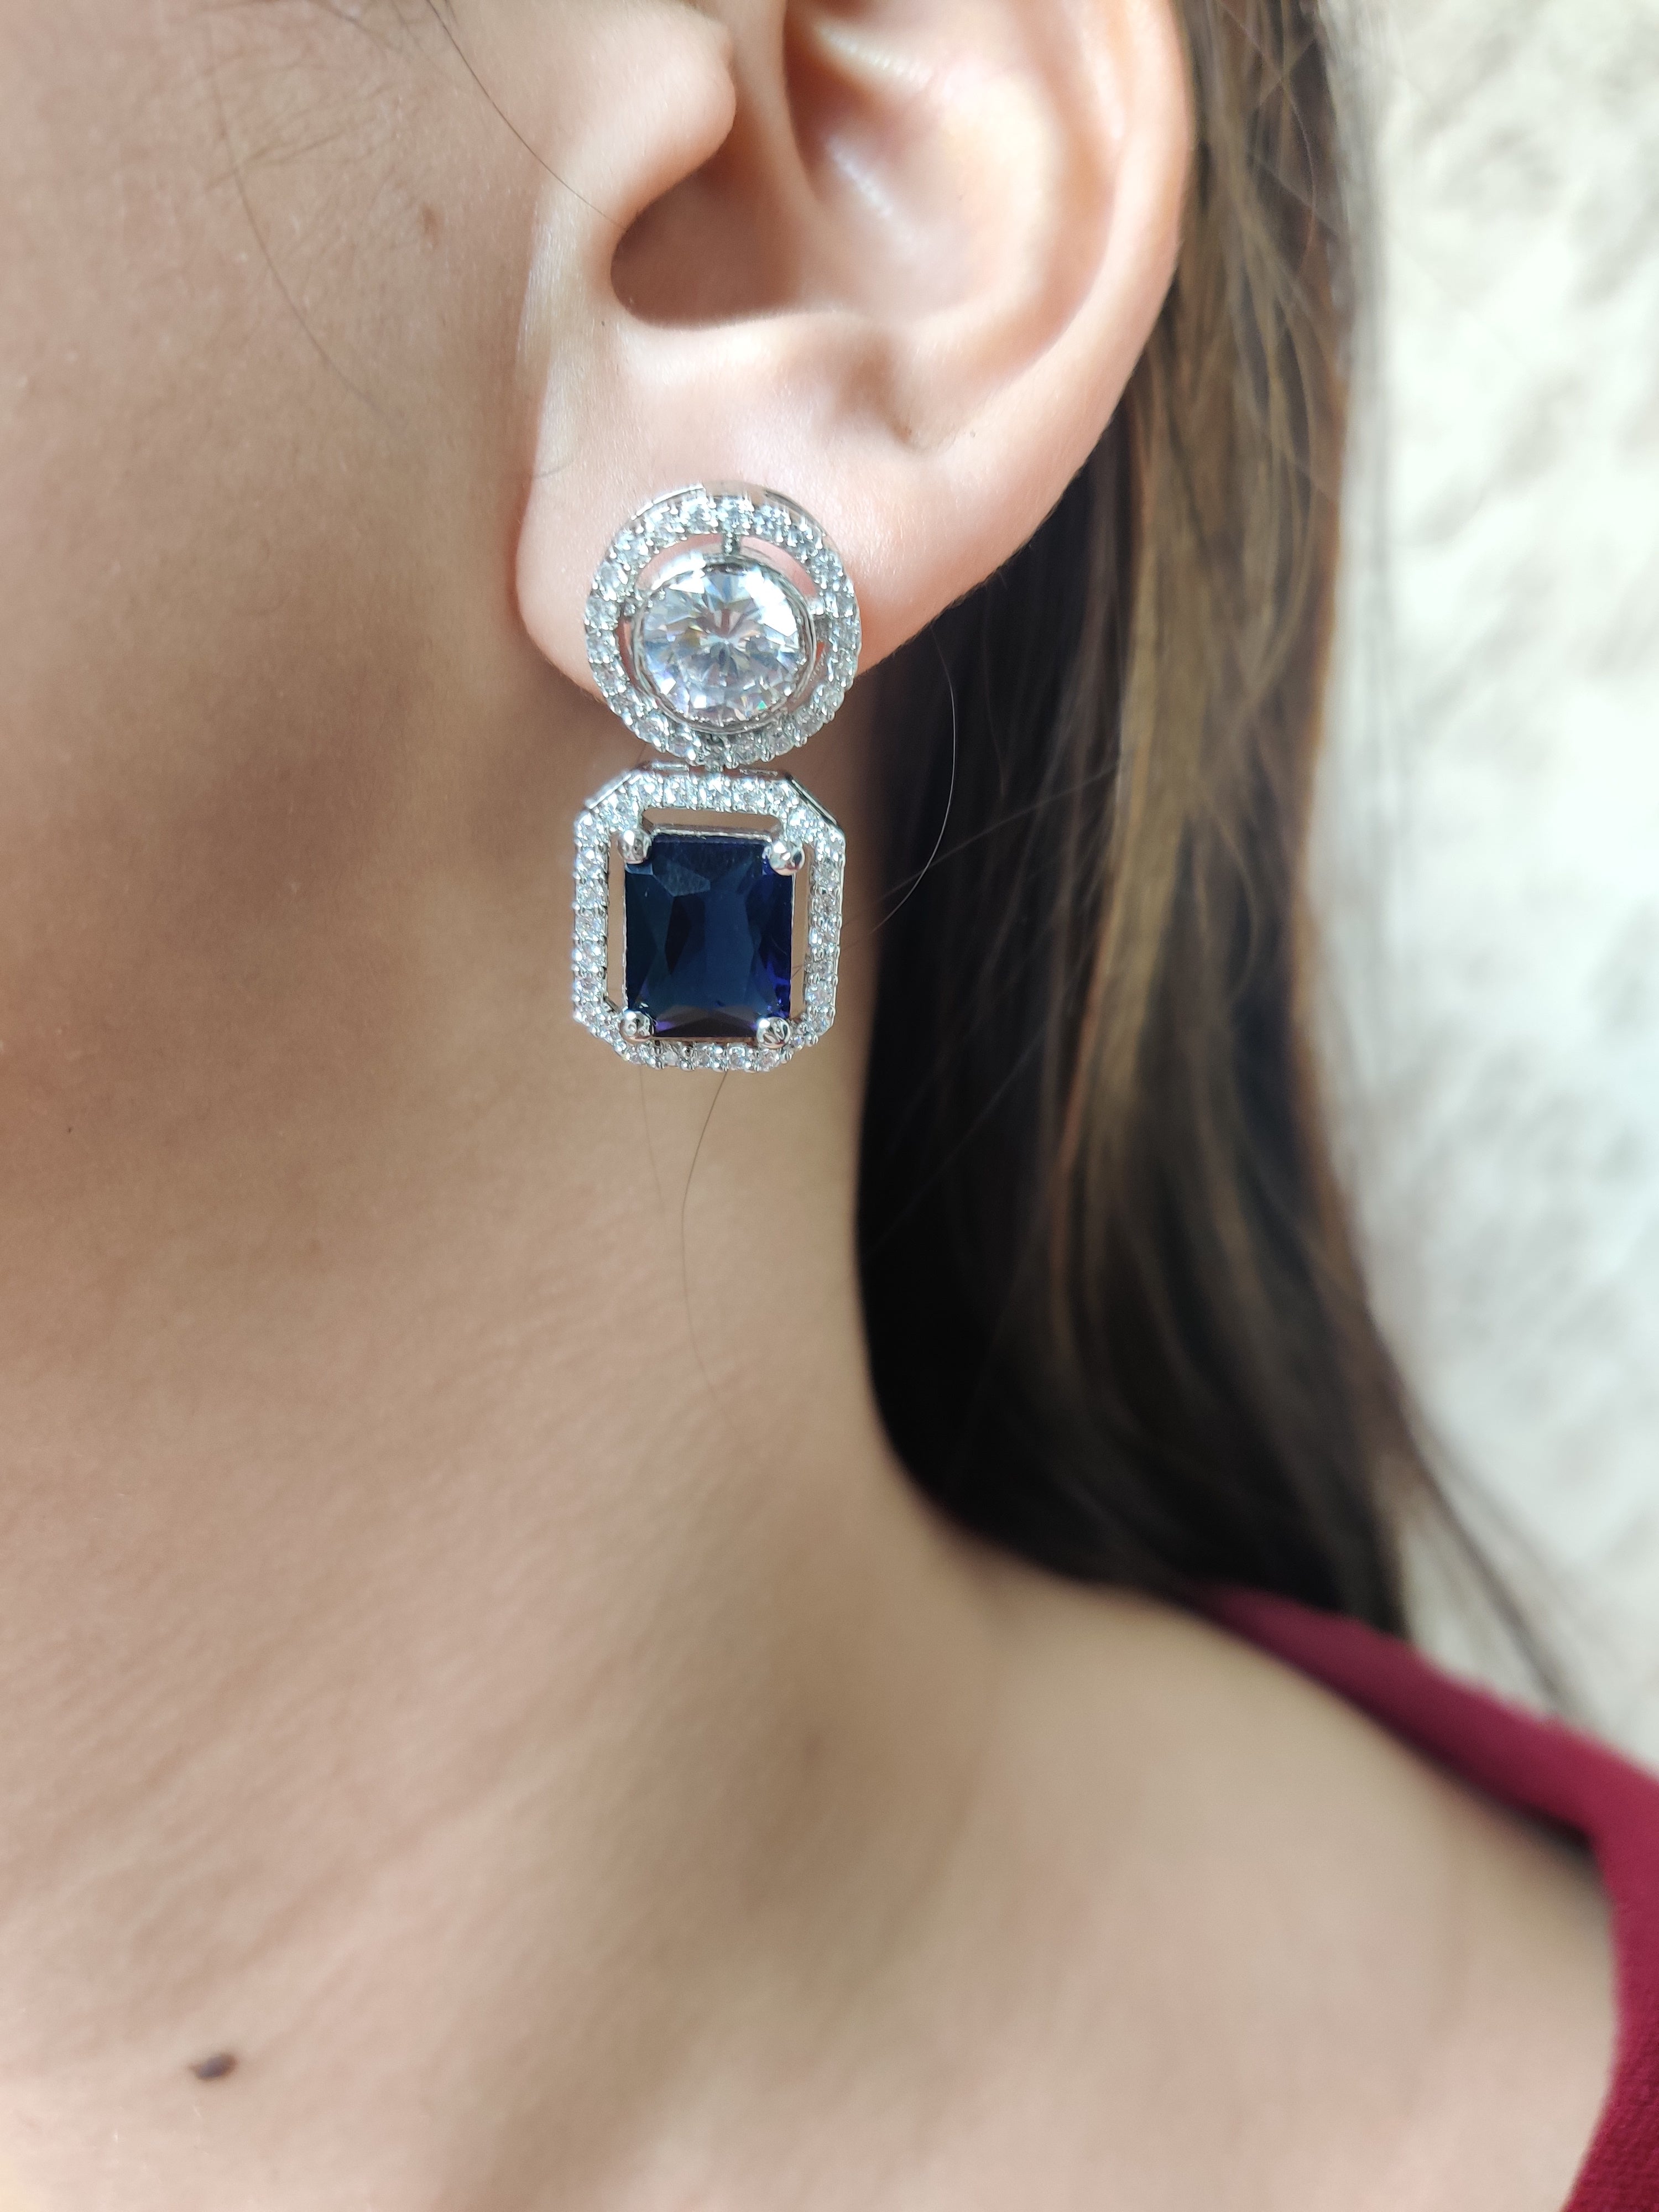 Begum Earrings (Royal Blue)